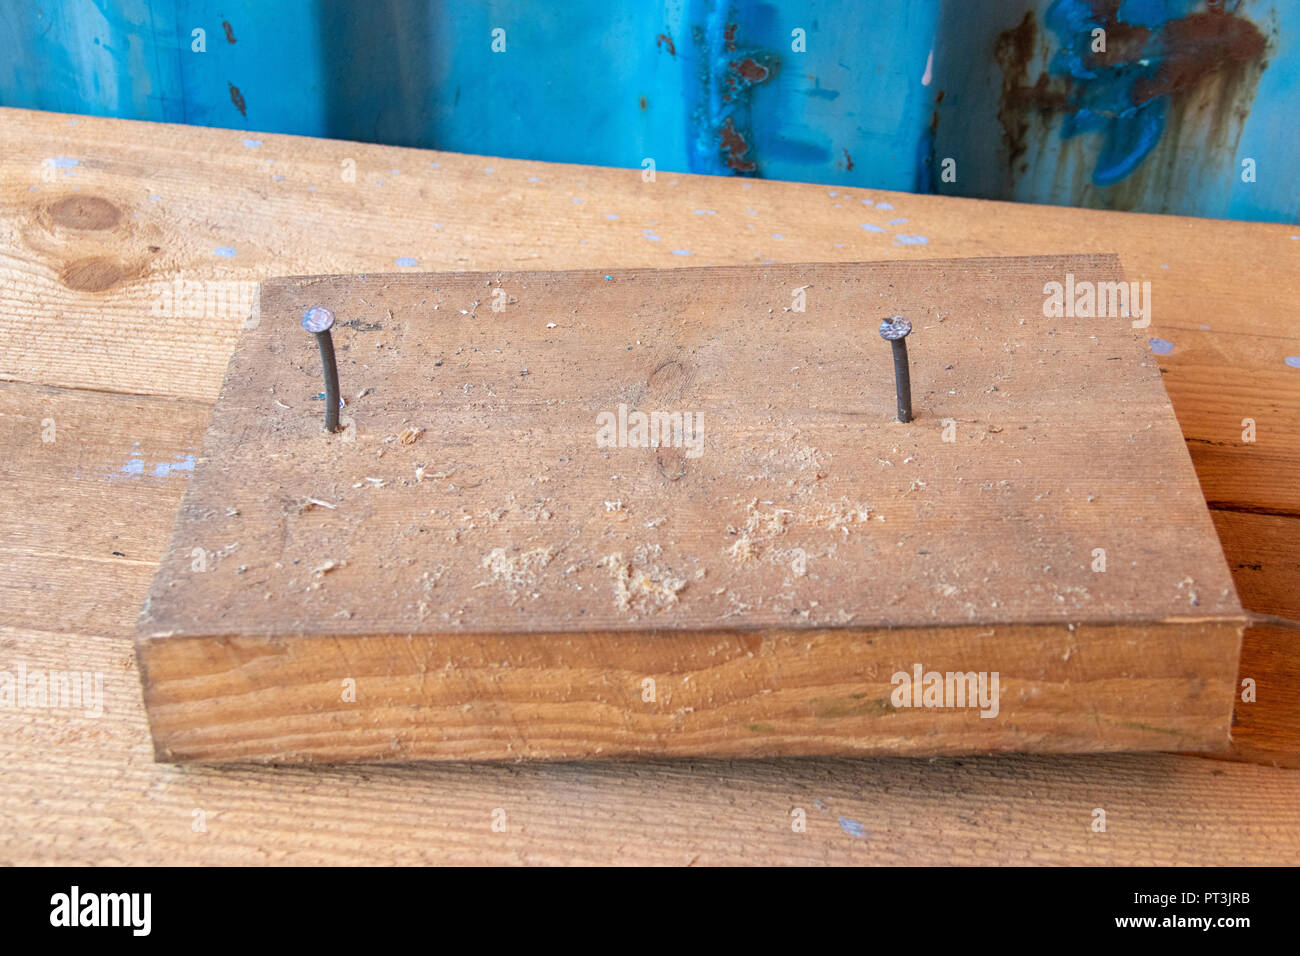 Blocco di legno con due chiodi in officina di riparazione cabinetry banco da lavoro con parete blu Foto Stock